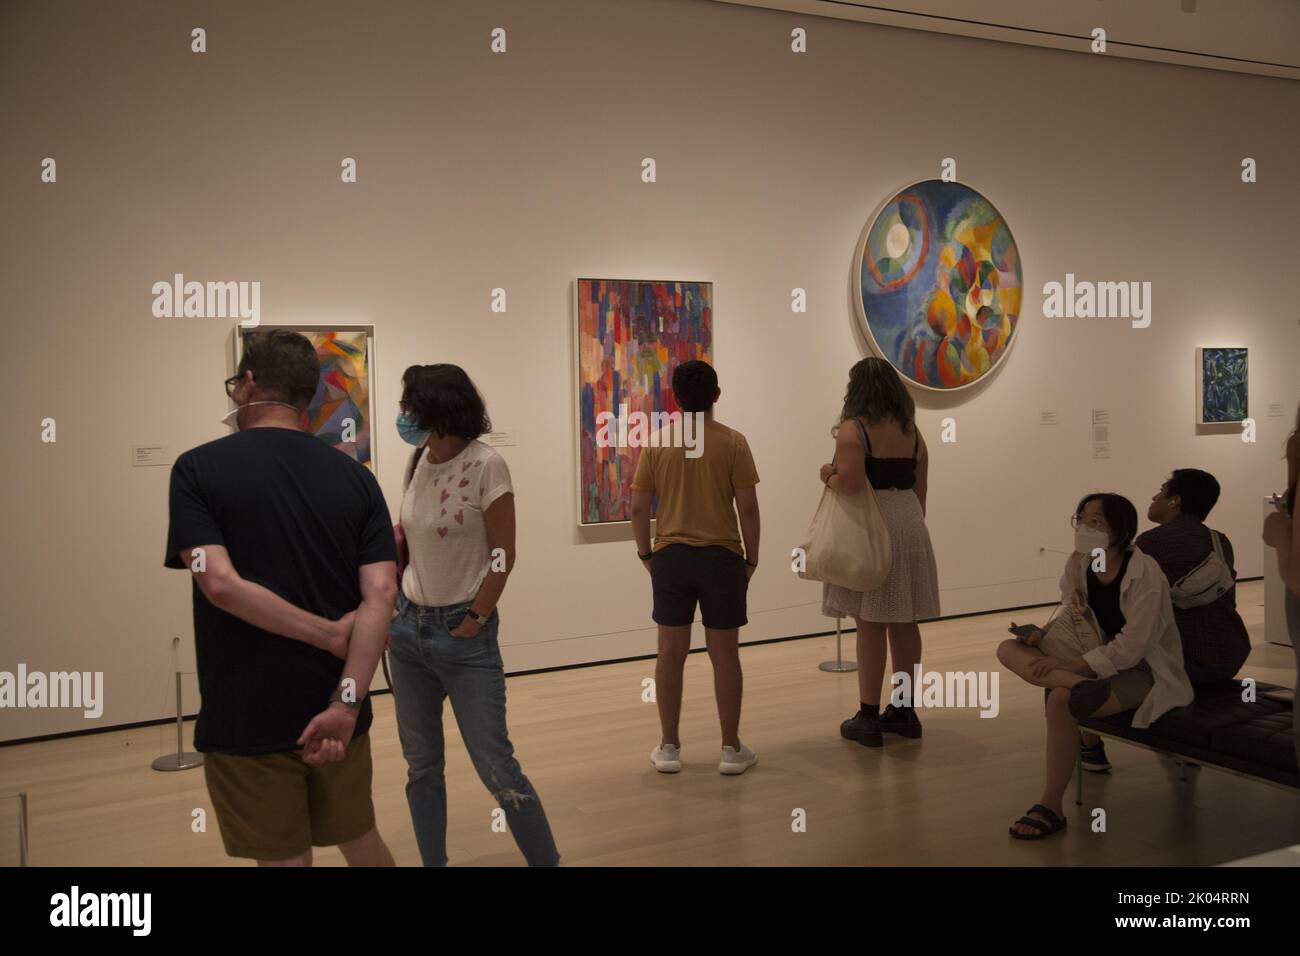 Los asistentes al museo se quedan alrededor de la pintura Kupka junto con otros del período modernista temprano en el Museo de Arte Moderno en la ciudad de Nueva York. Foto de stock